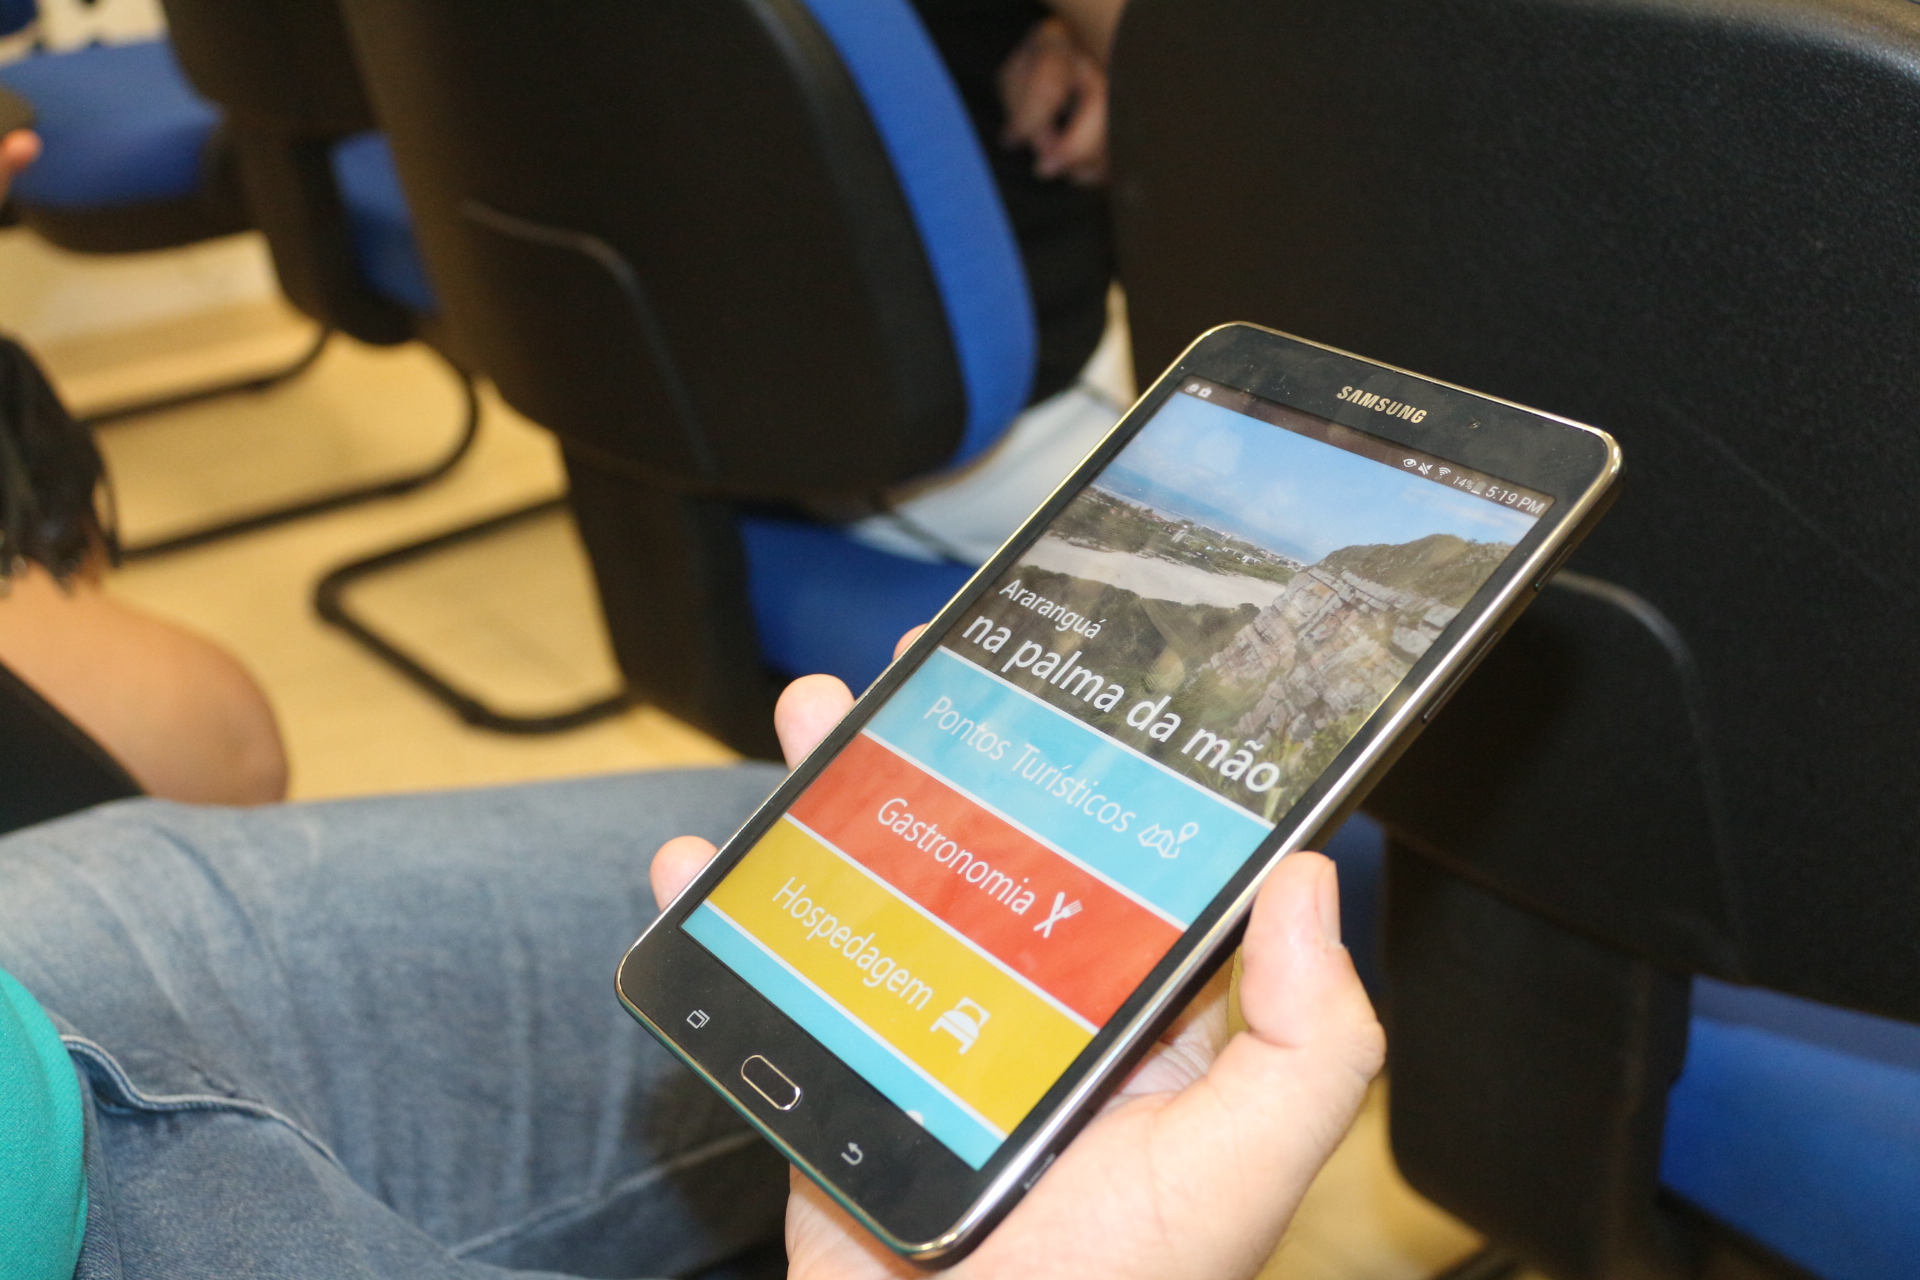 Guia turístico digital do município foi desenvolvido por alunos da UFSC em projeto realizado no Laboratório de Experimentação Remota (RExLab) do campus